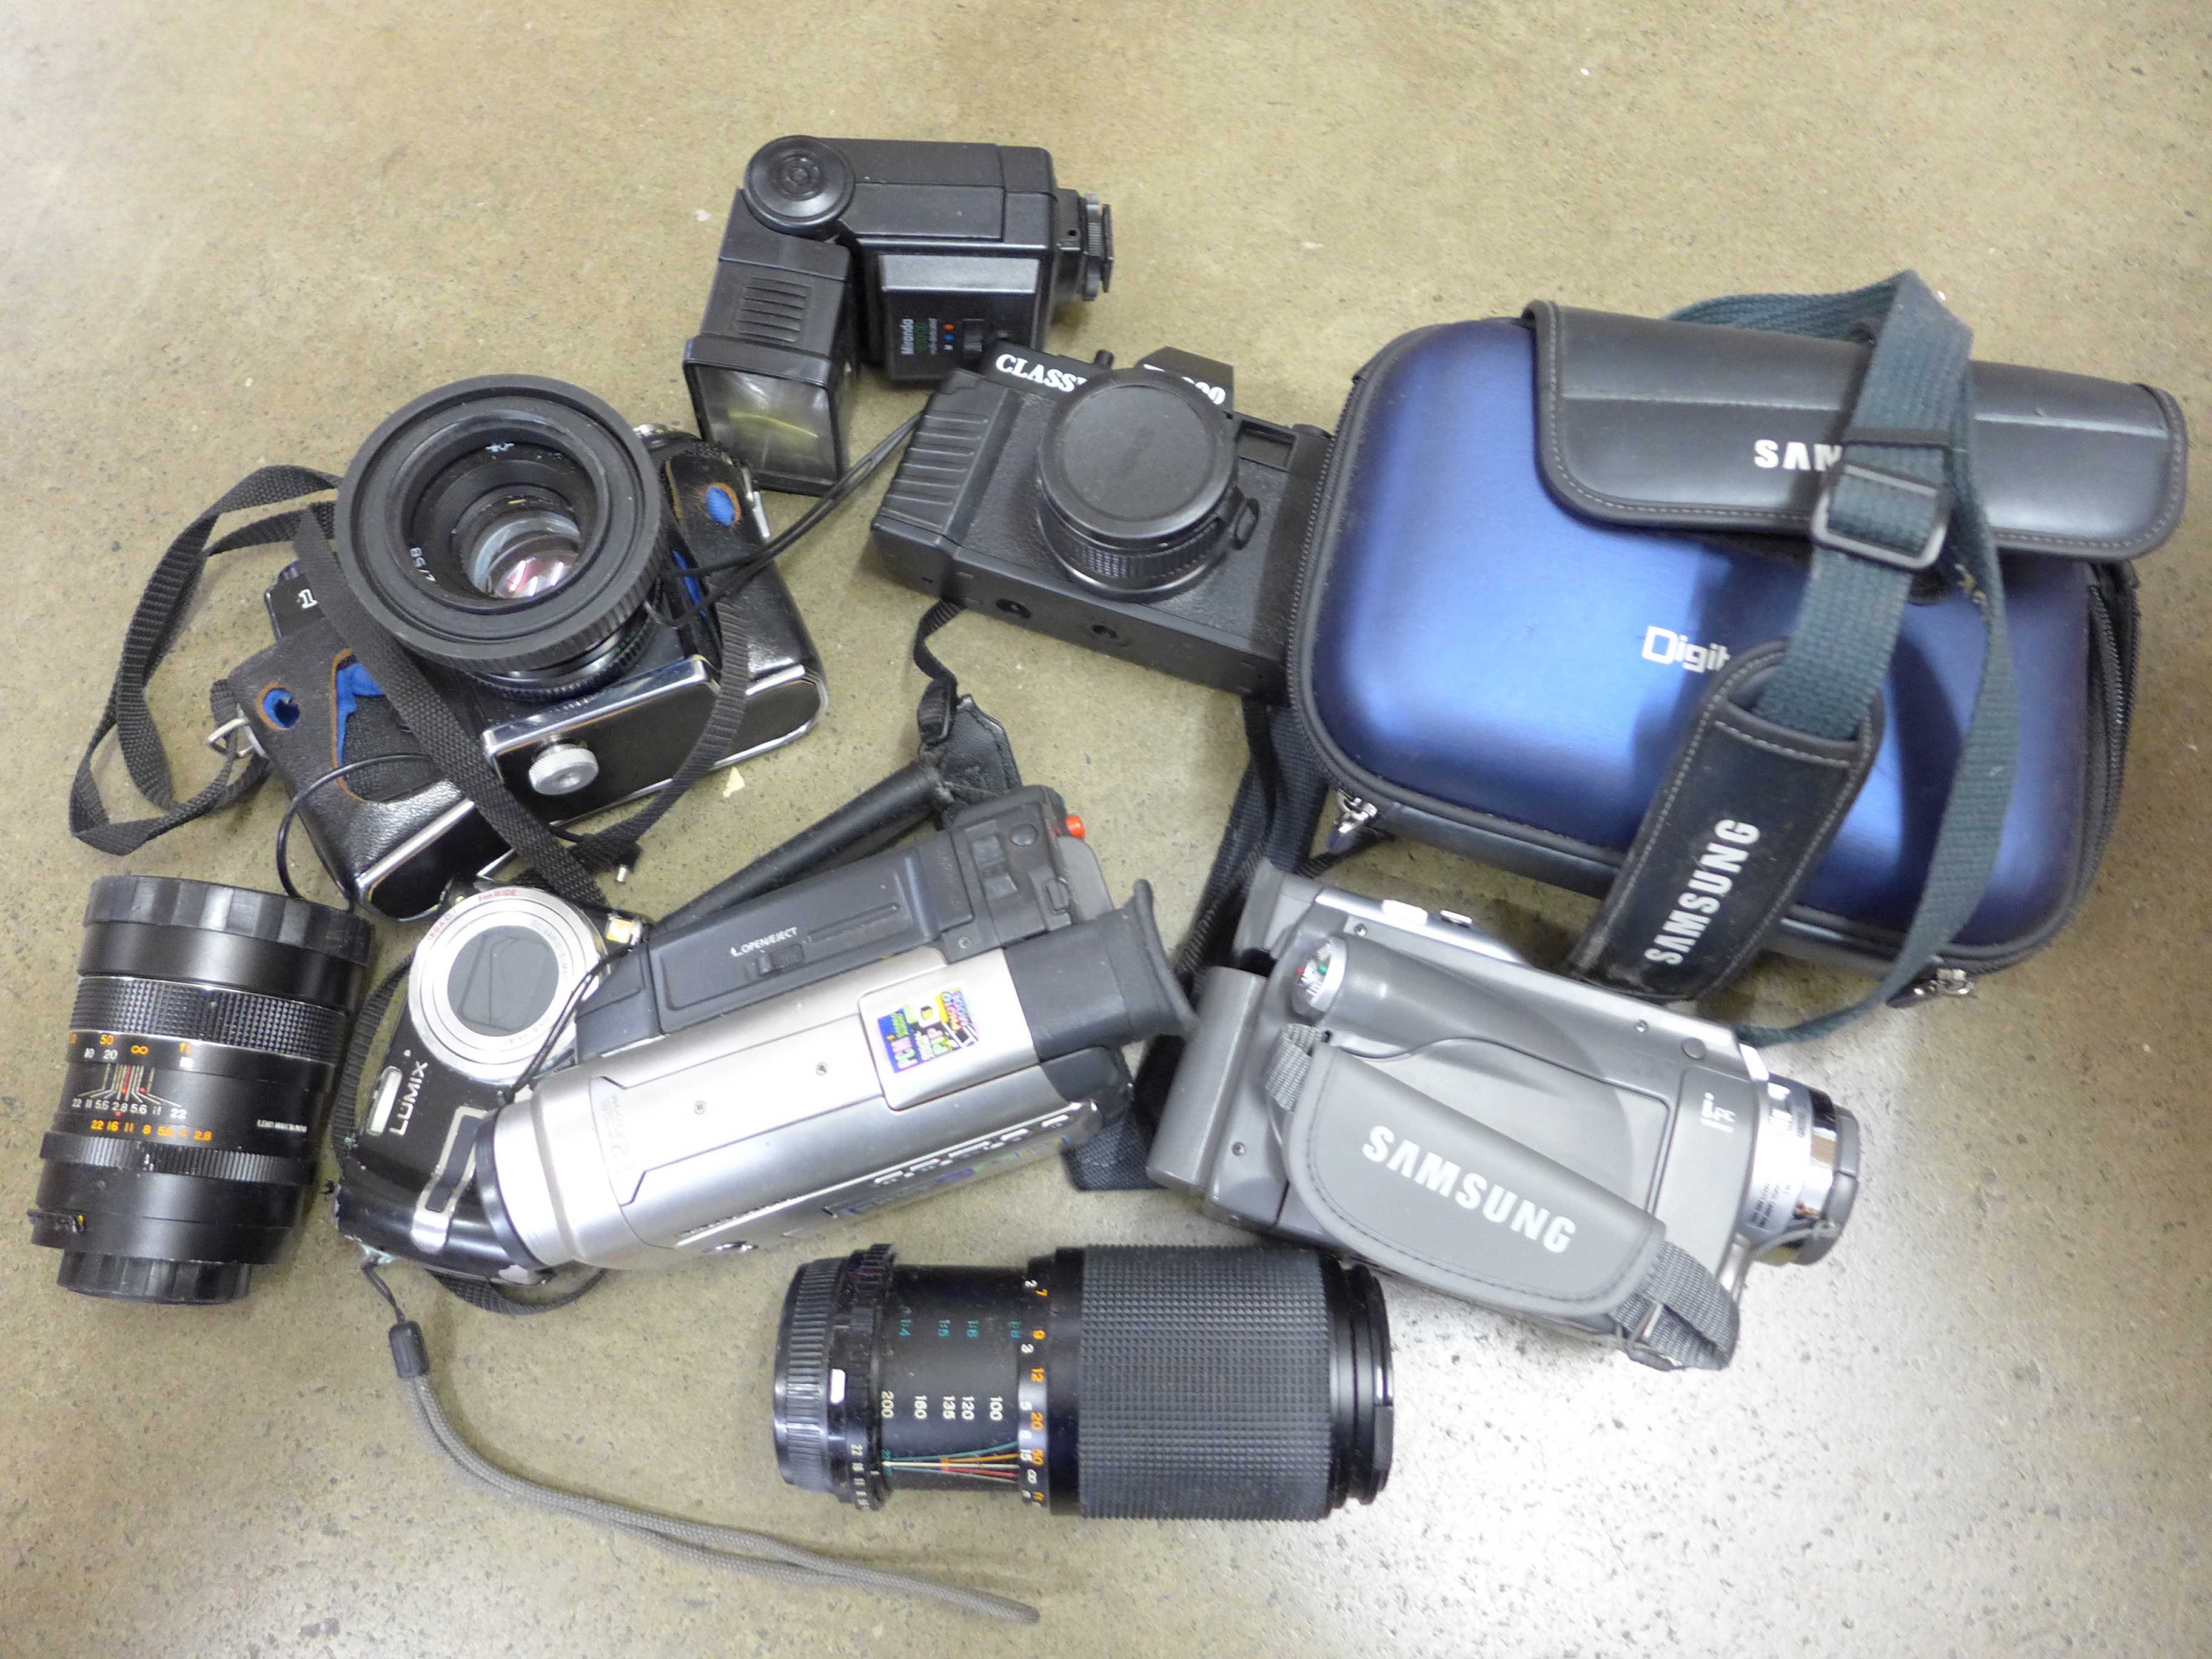 Digital cameras, cameras and camcorders